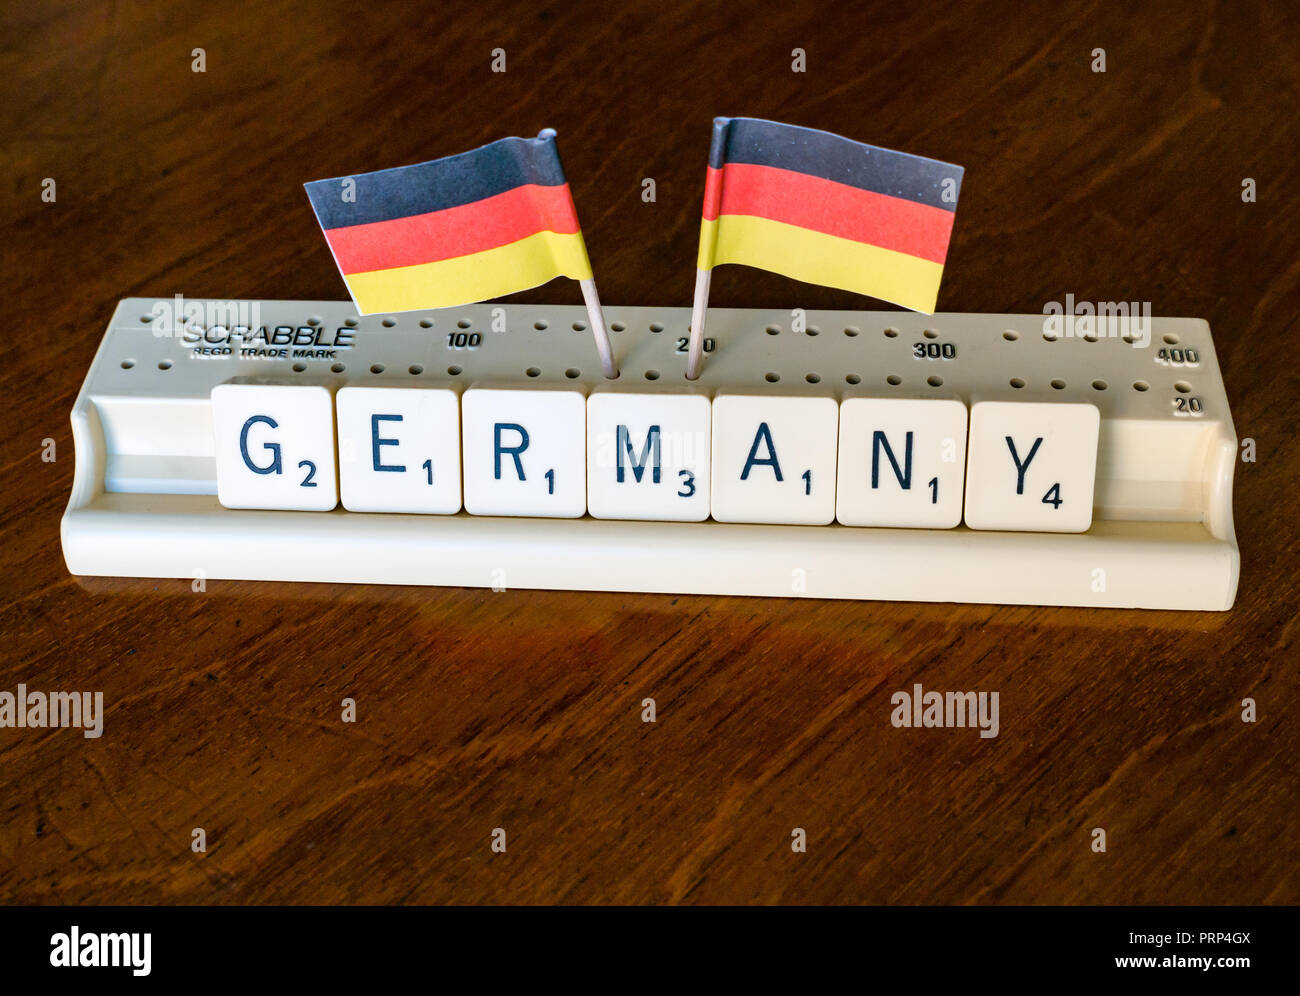 L'orthographe des lettres scrabble SCRABBLE en Allemagne bac avec drapeau allemand sur fond d'acajou sombre Banque D'Images